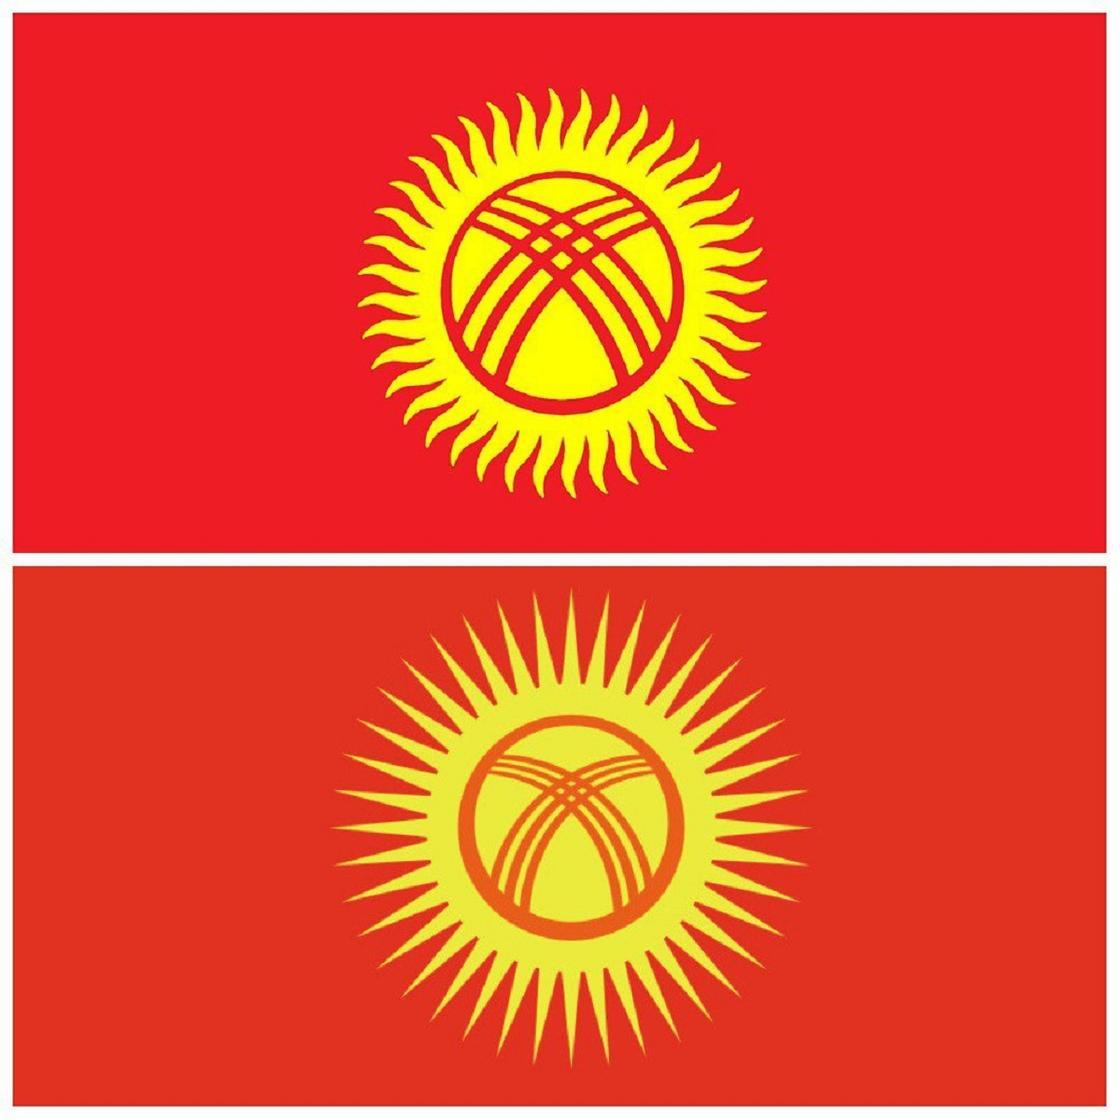 Изображения существующего флага Кыргызстана и новой версии